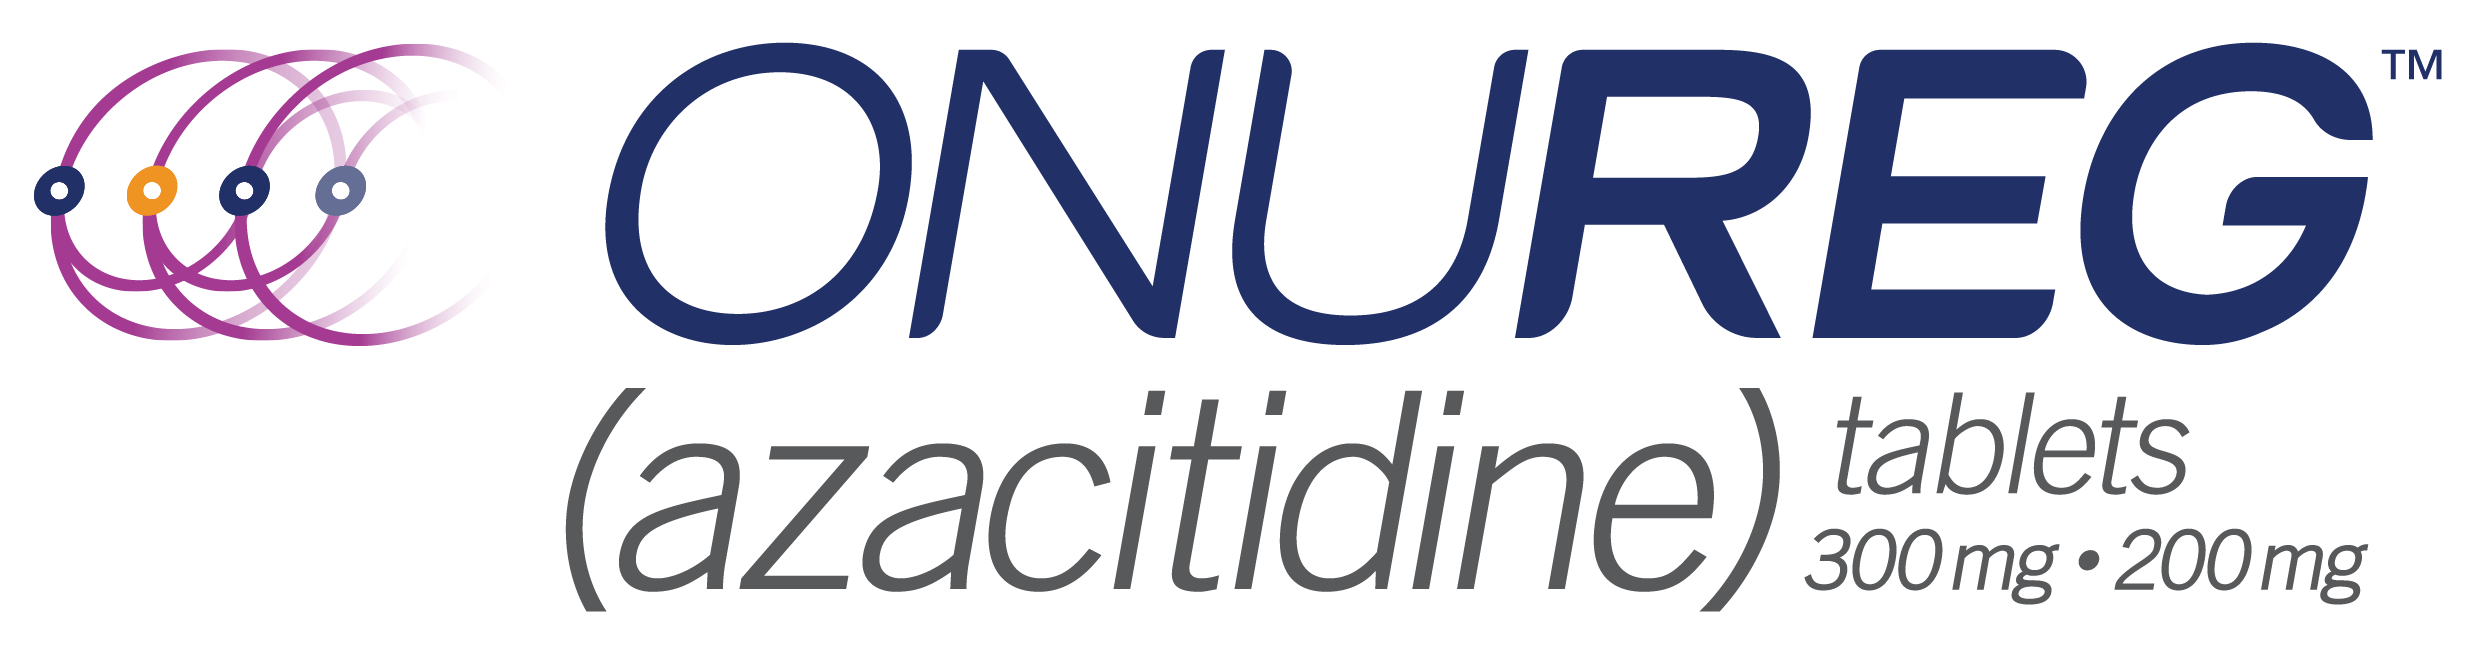 ONUREG® (azacitidine) tablets 300mg & 200mg logo